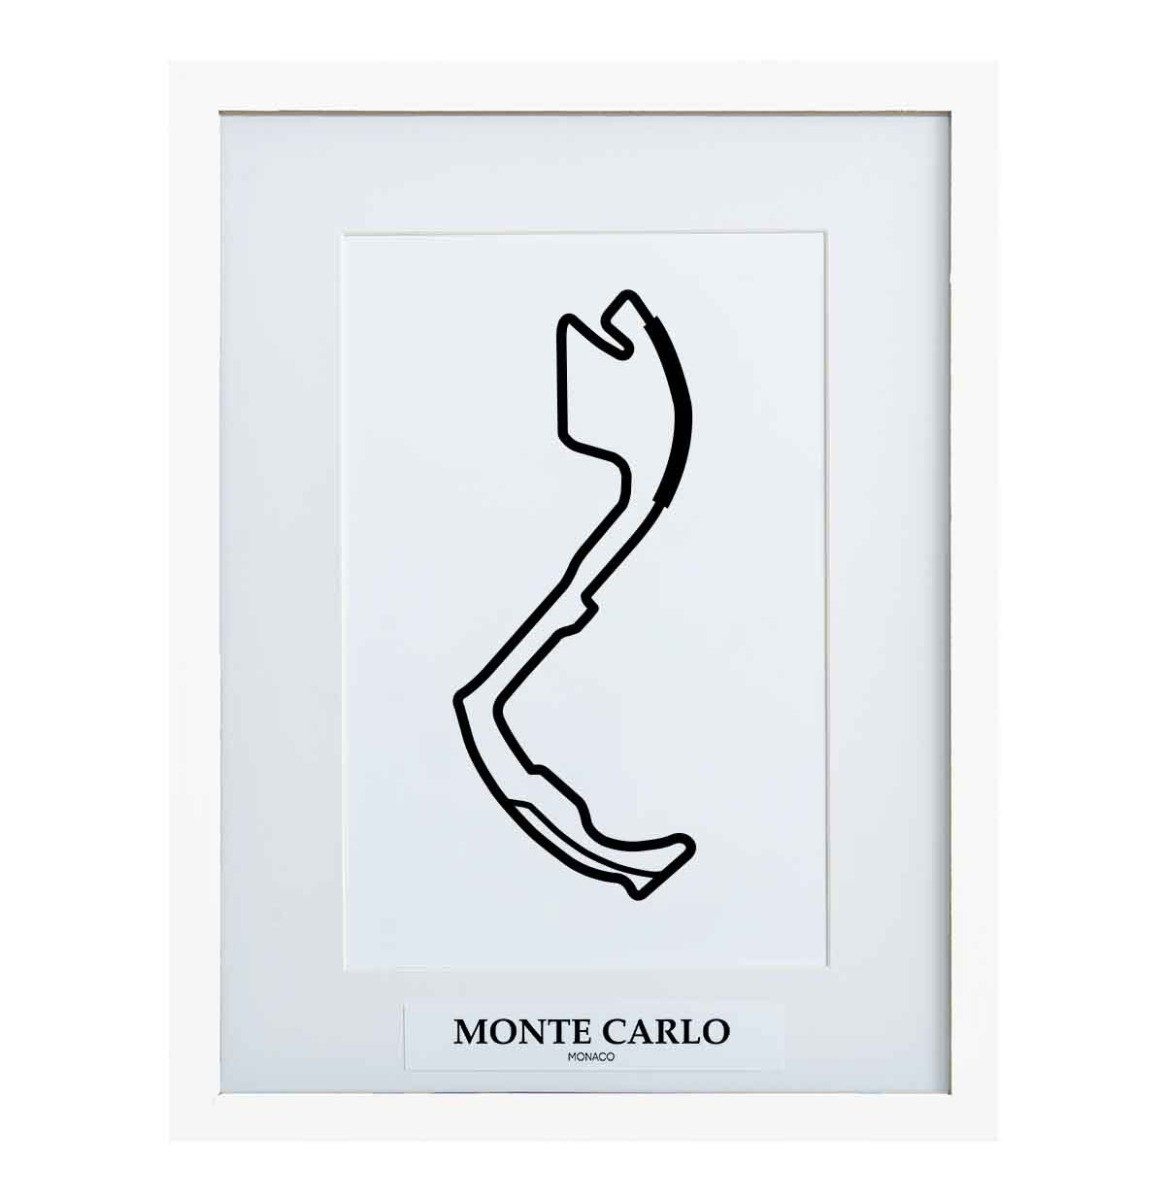 Formule 1 Circuit Monte Carlo Monaco 3D Print - Wit